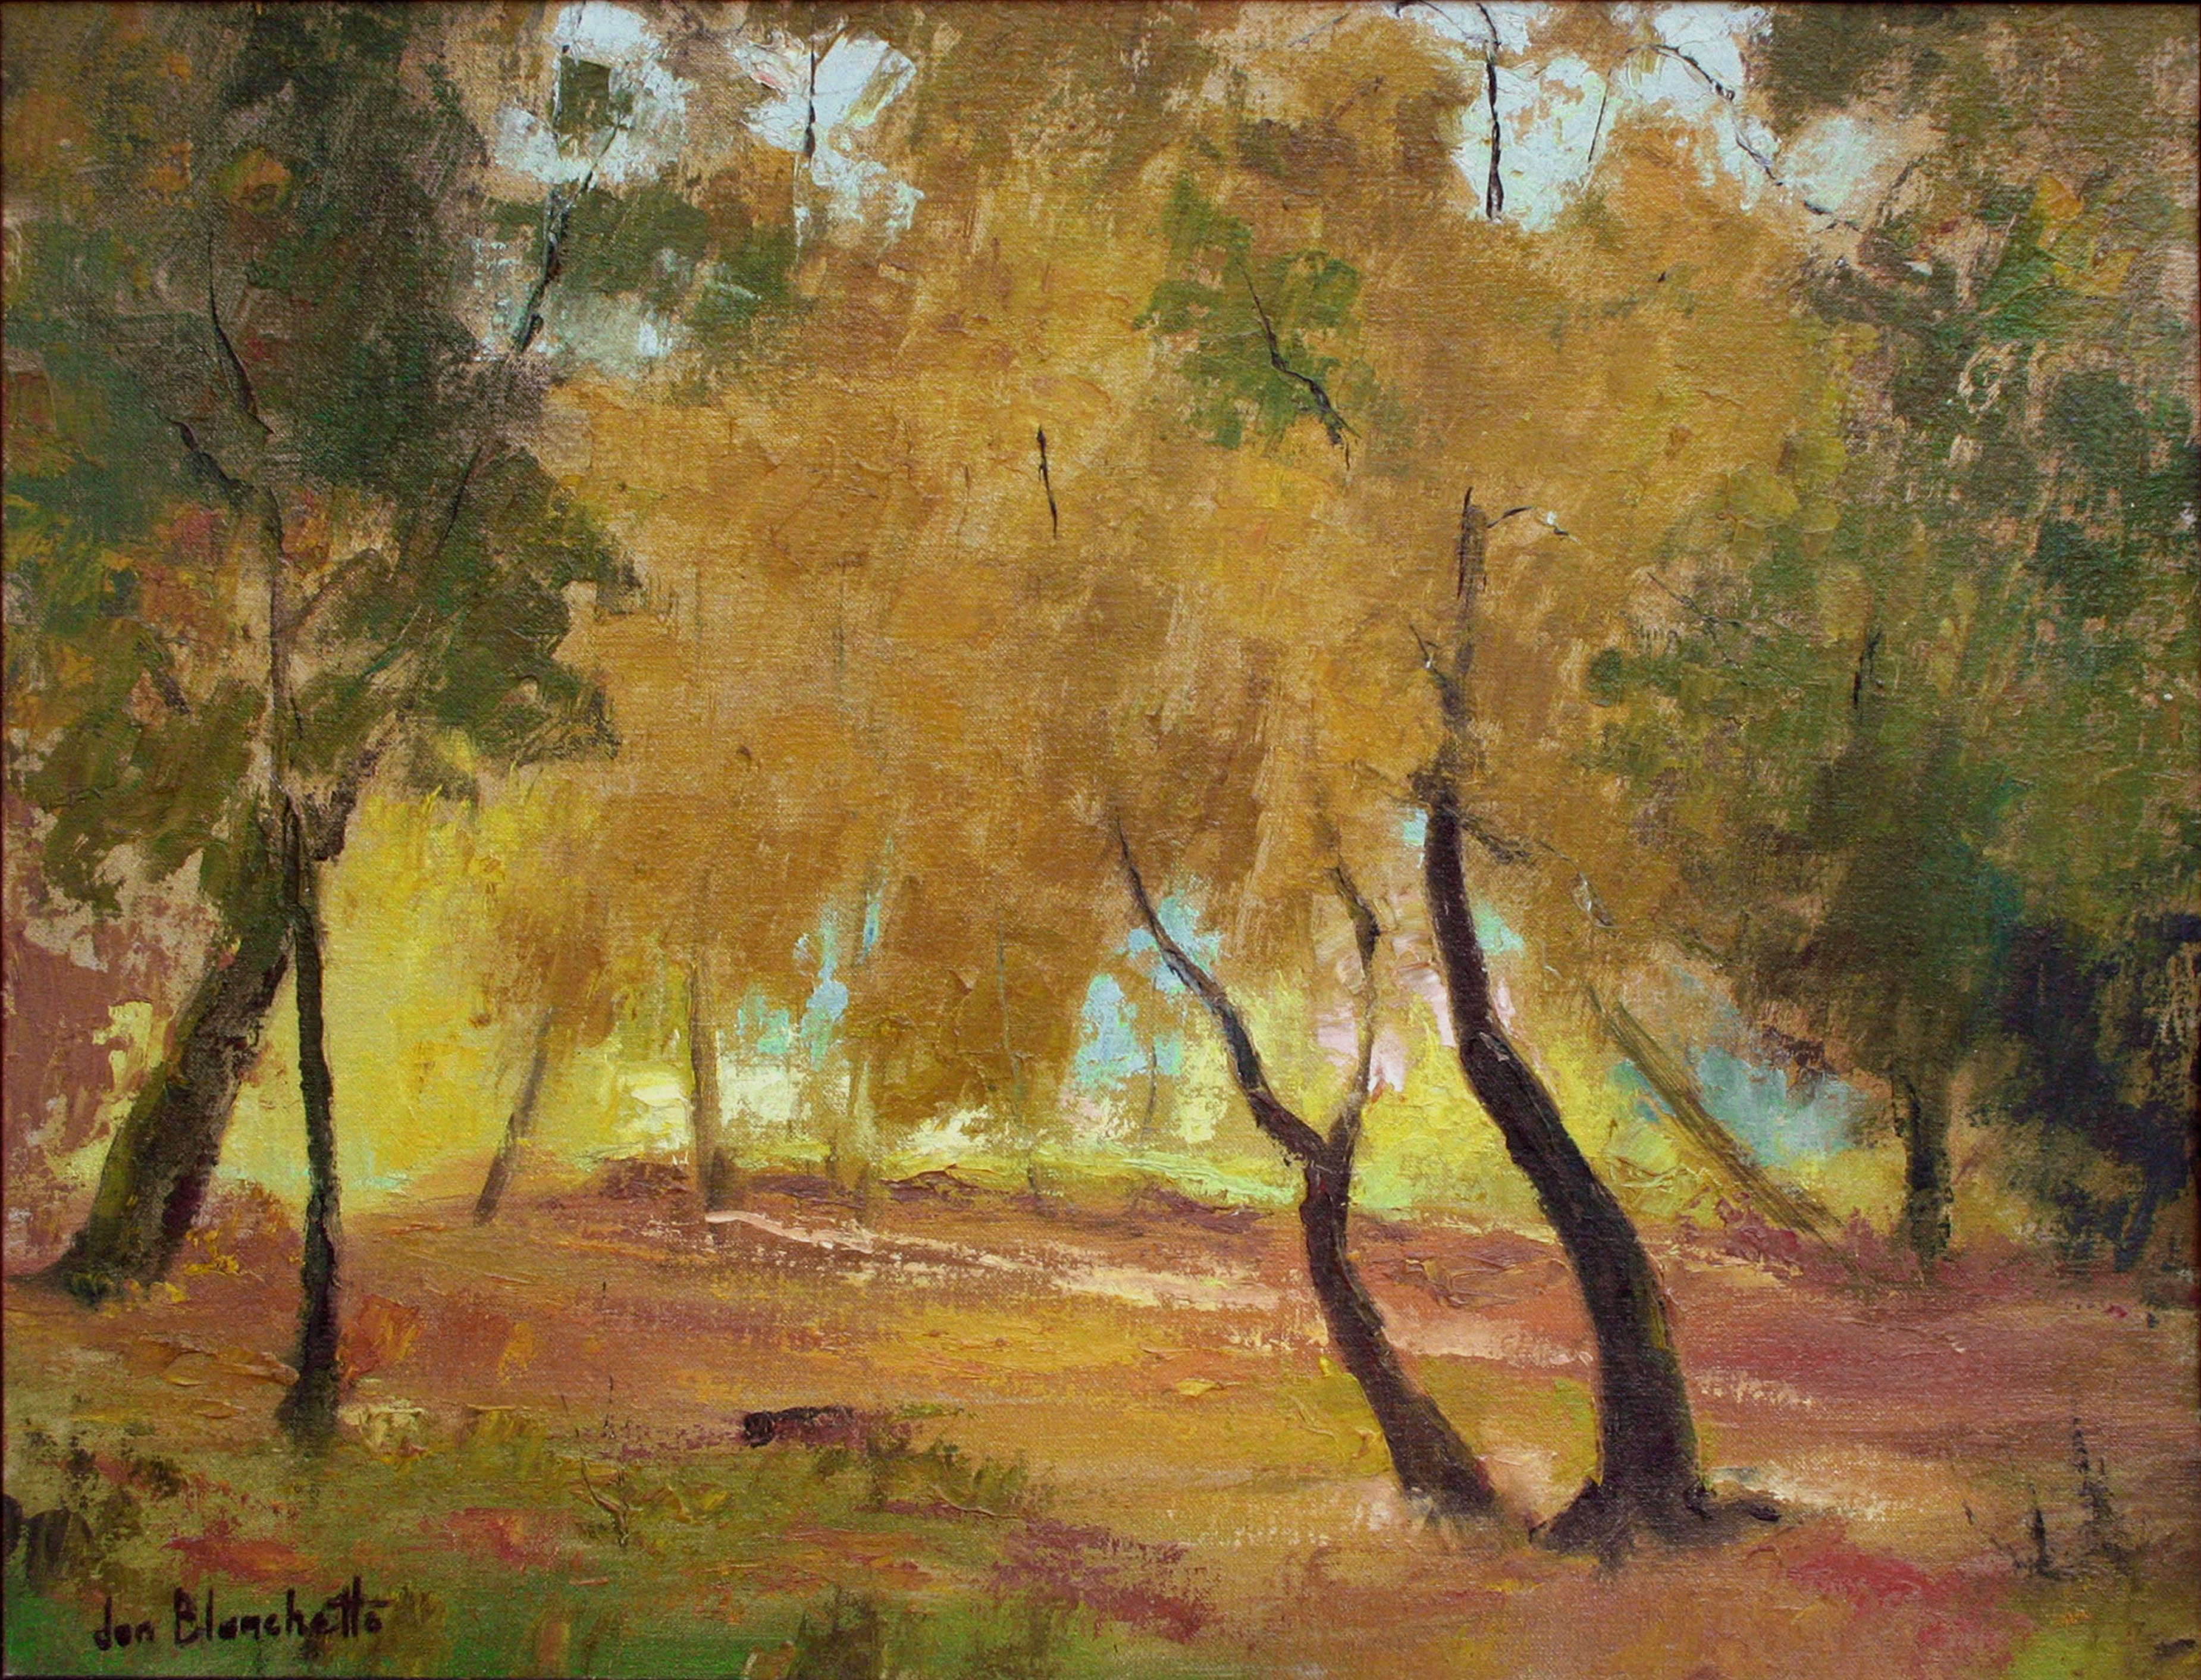 Árboles de otoño, paisaje otoñal de mediados de siglo con tonos naranjas y tierra - Painting de Jon Blanchette